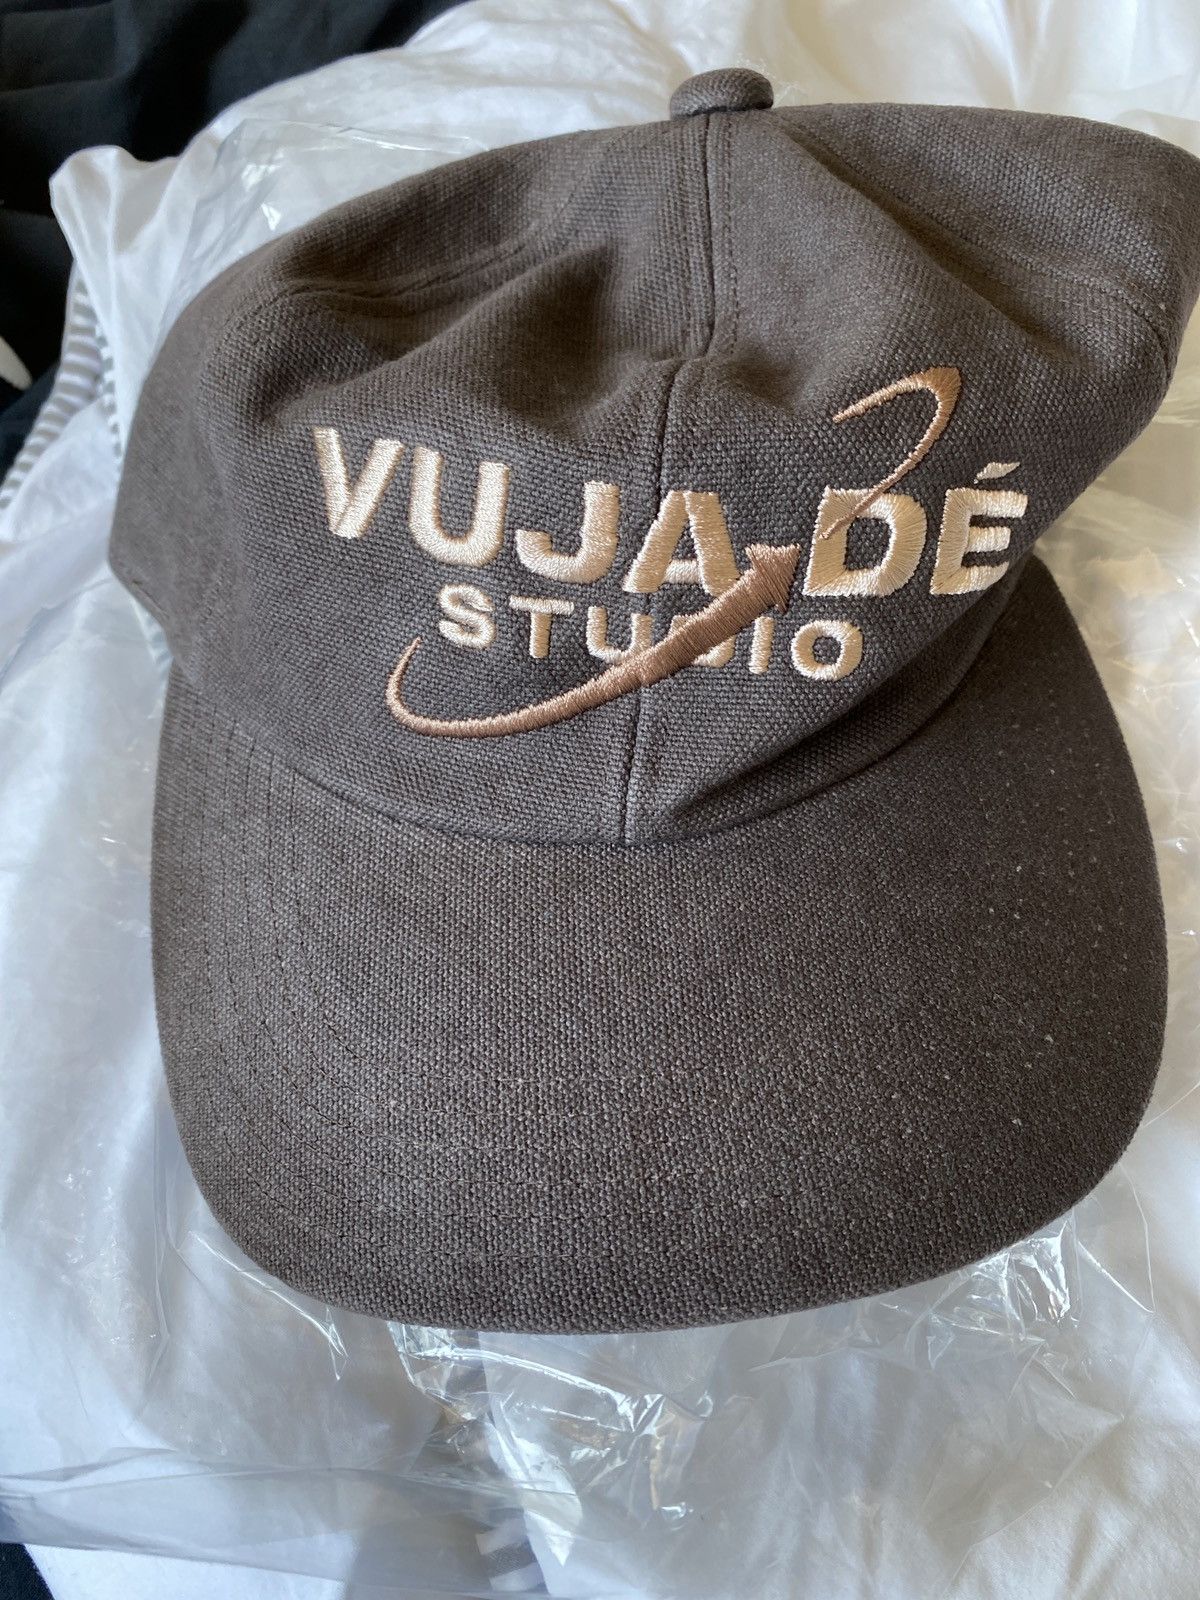 Japanese Brand Vuja De Studio Logo Hat | Grailed